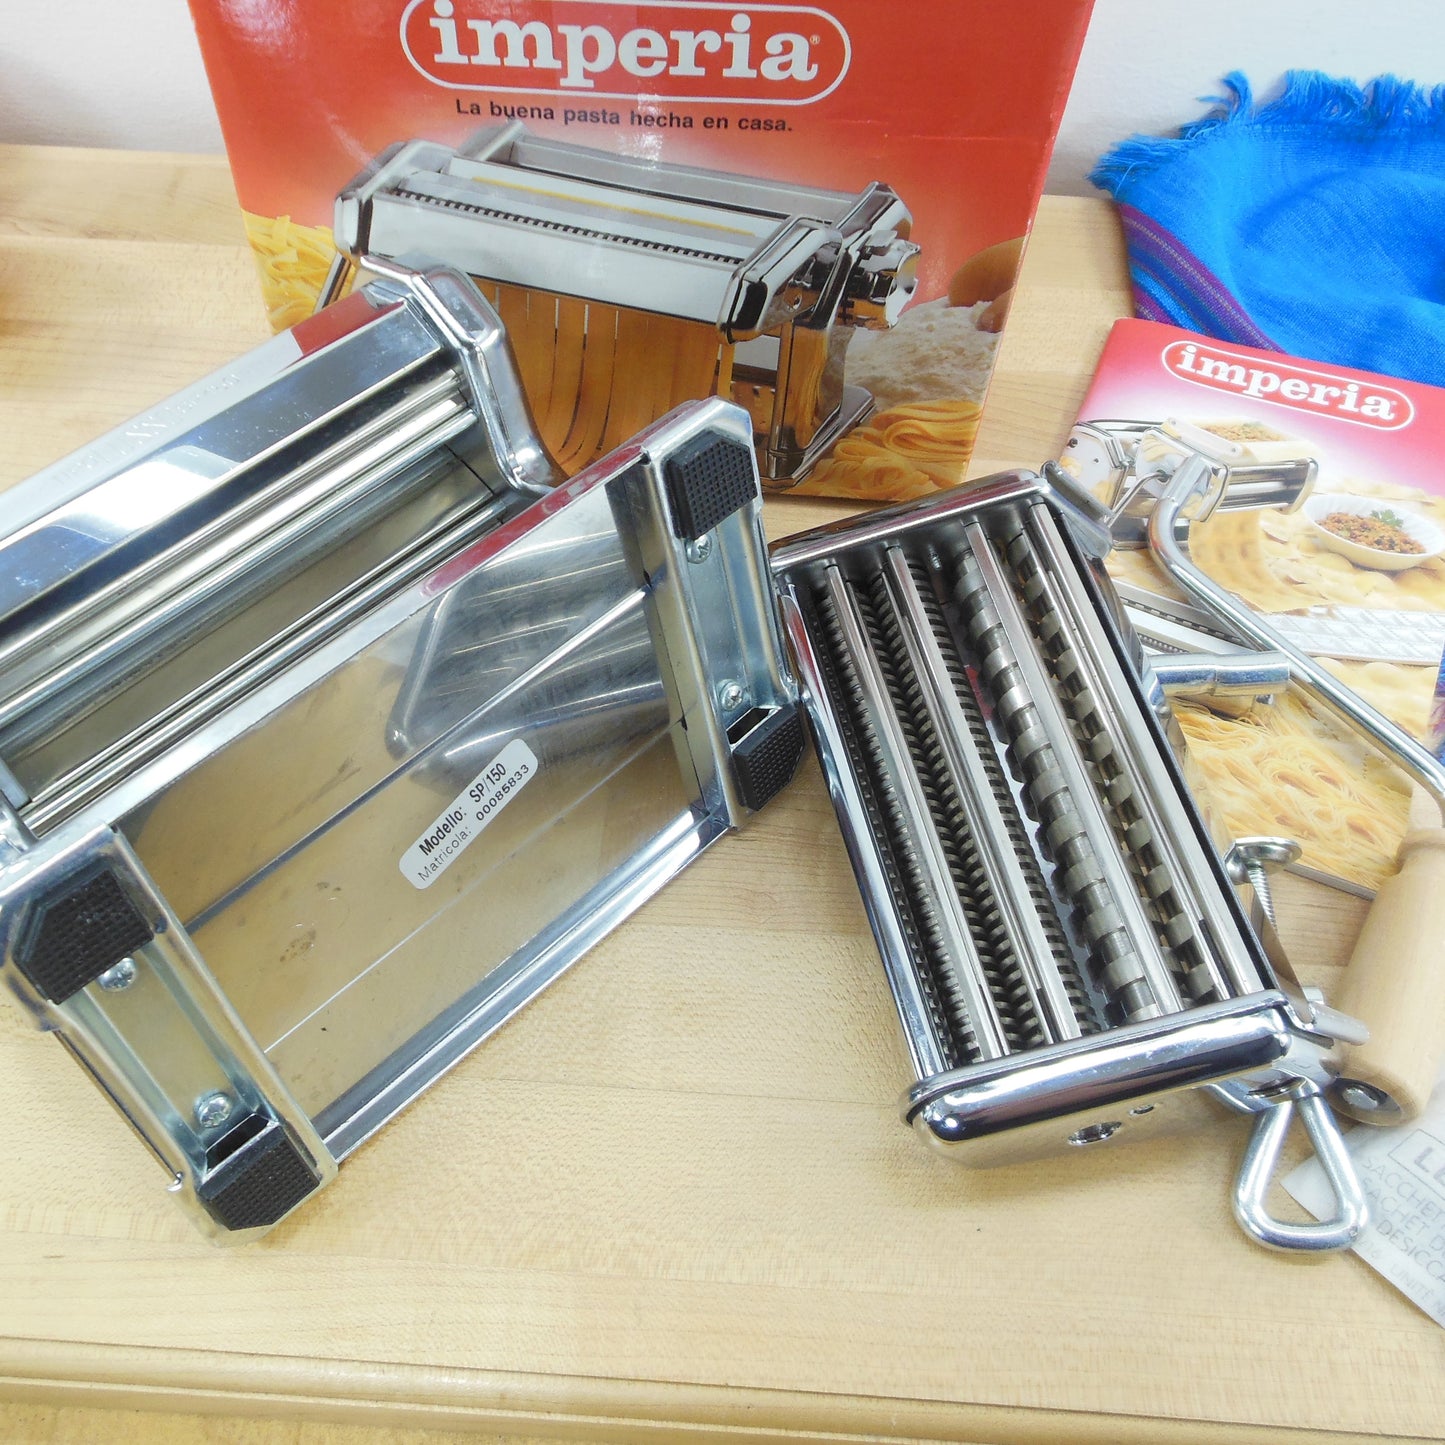 Imperia Italy SP/150 Manual Pasta Maker Machine Used